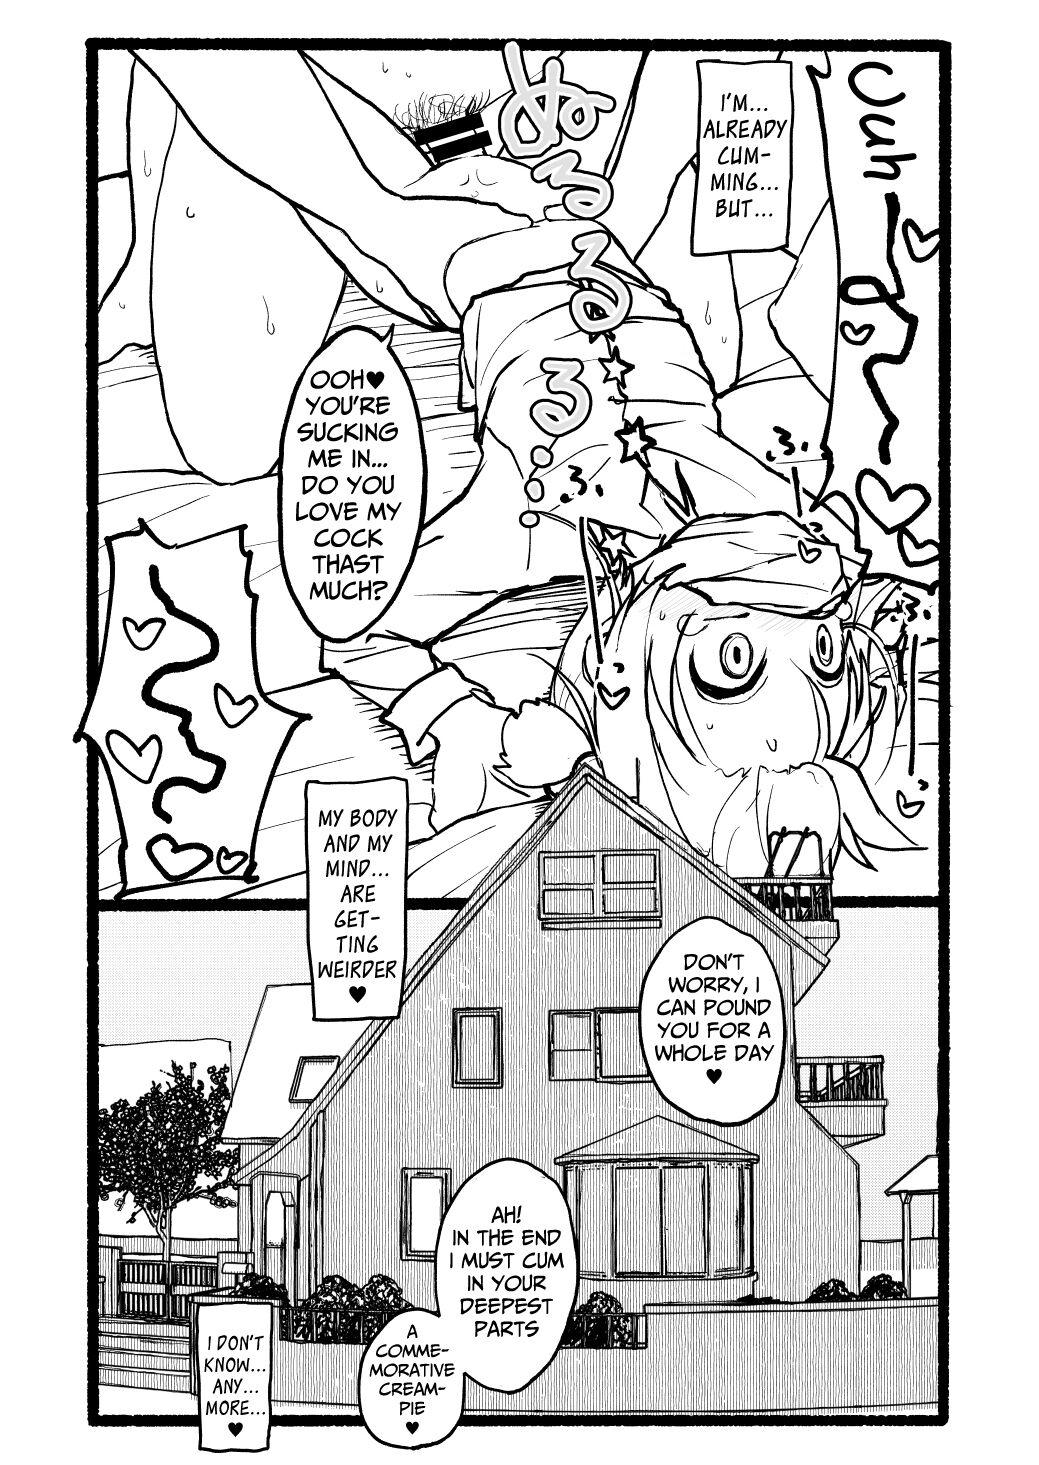 Sakura-chan Kouin Manga 94